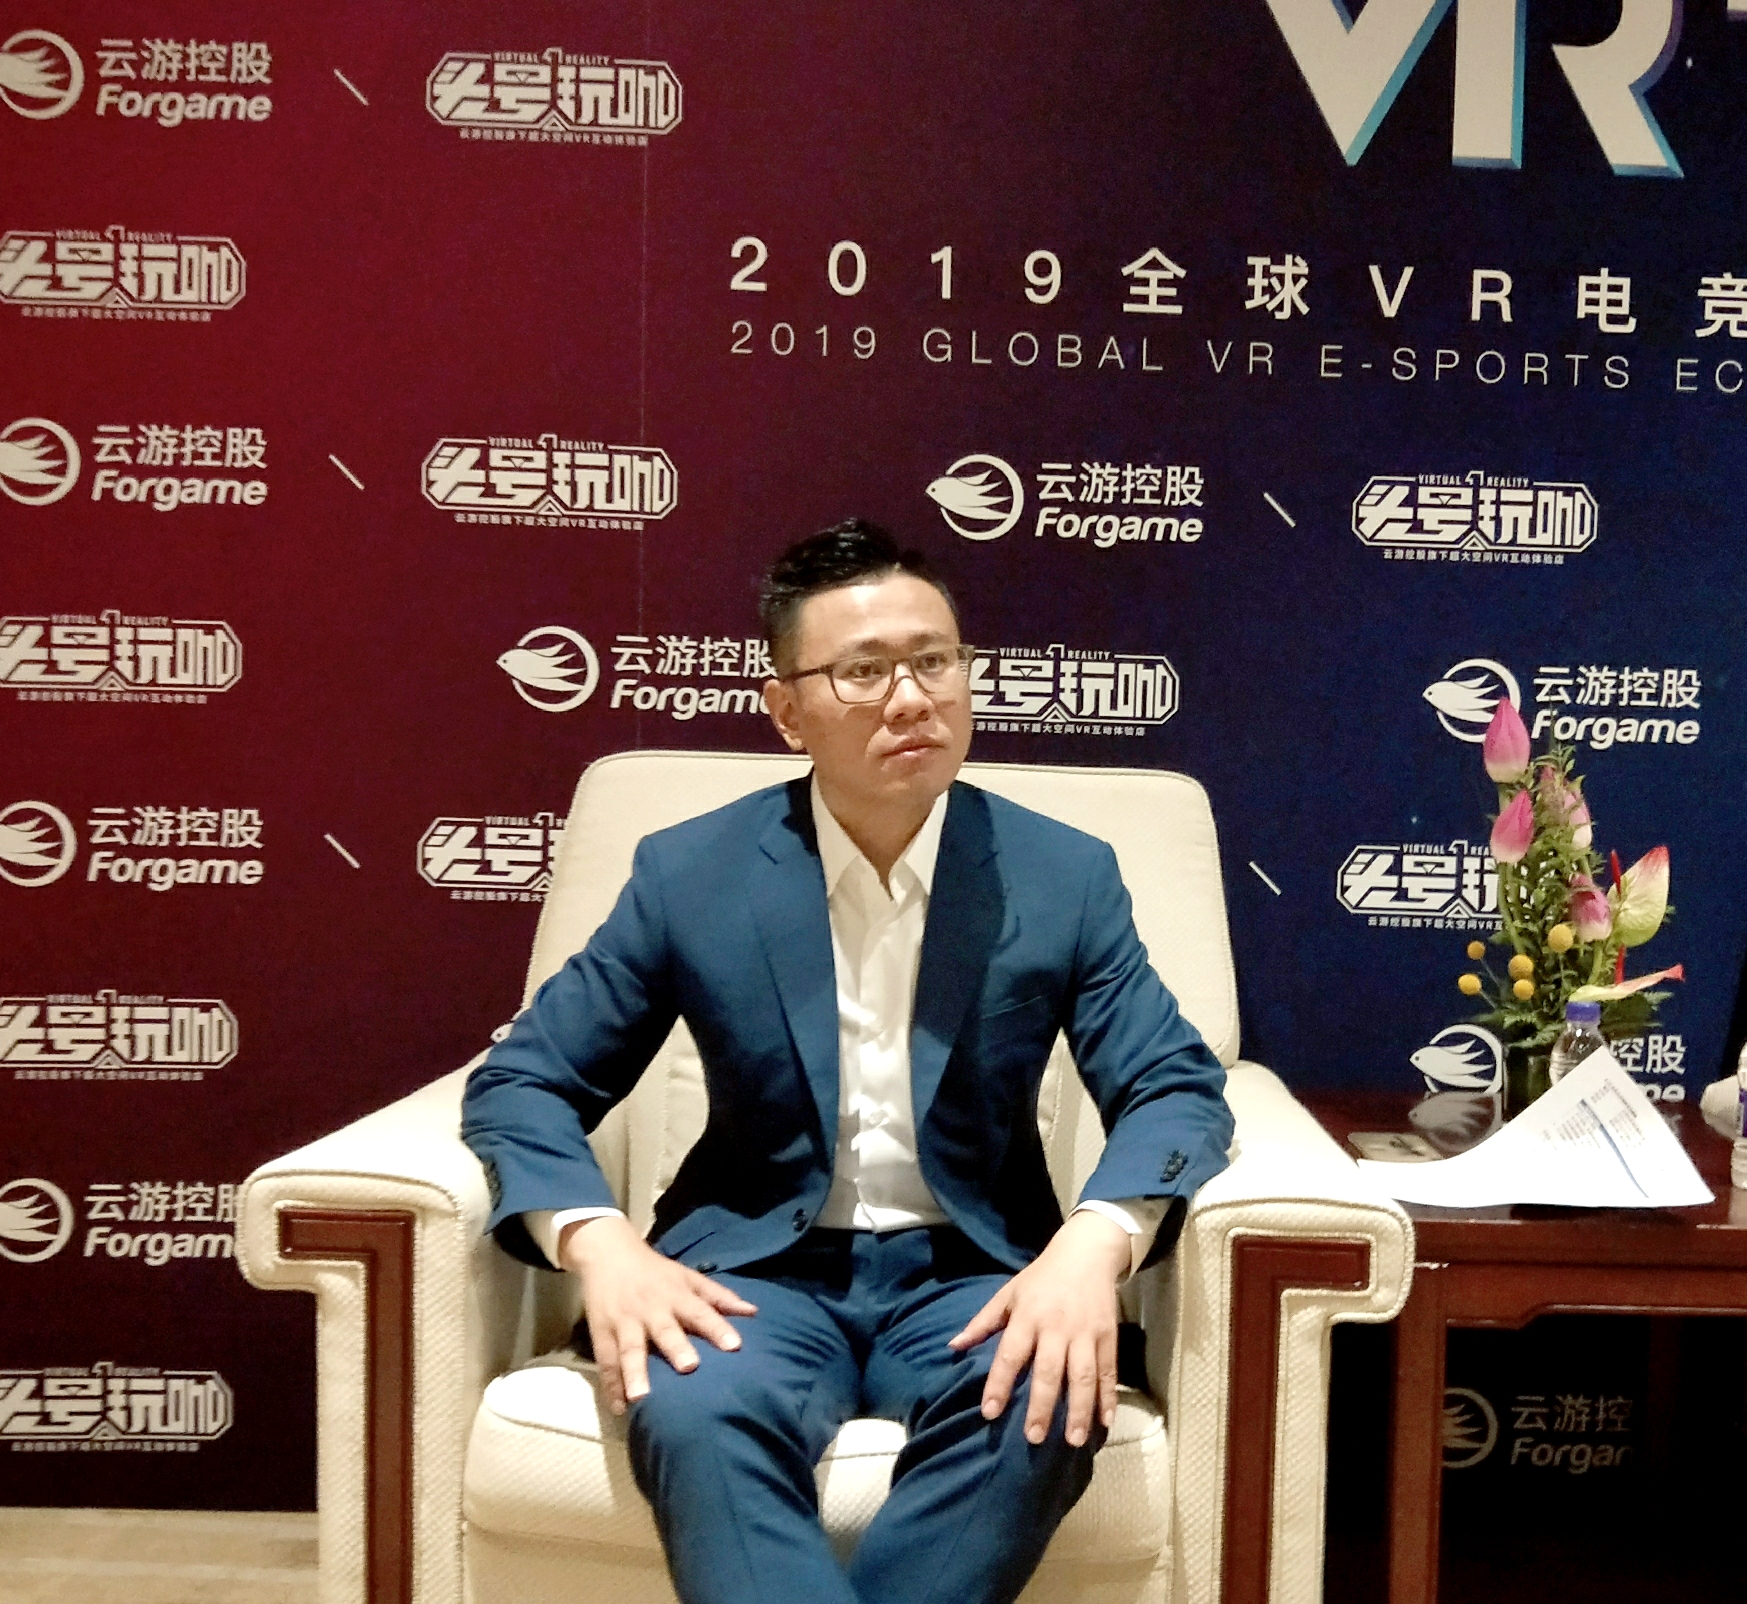 雲遊控股有限公司董事長兼CEO汪東風接受媒體訪問 (朱燁攝) 